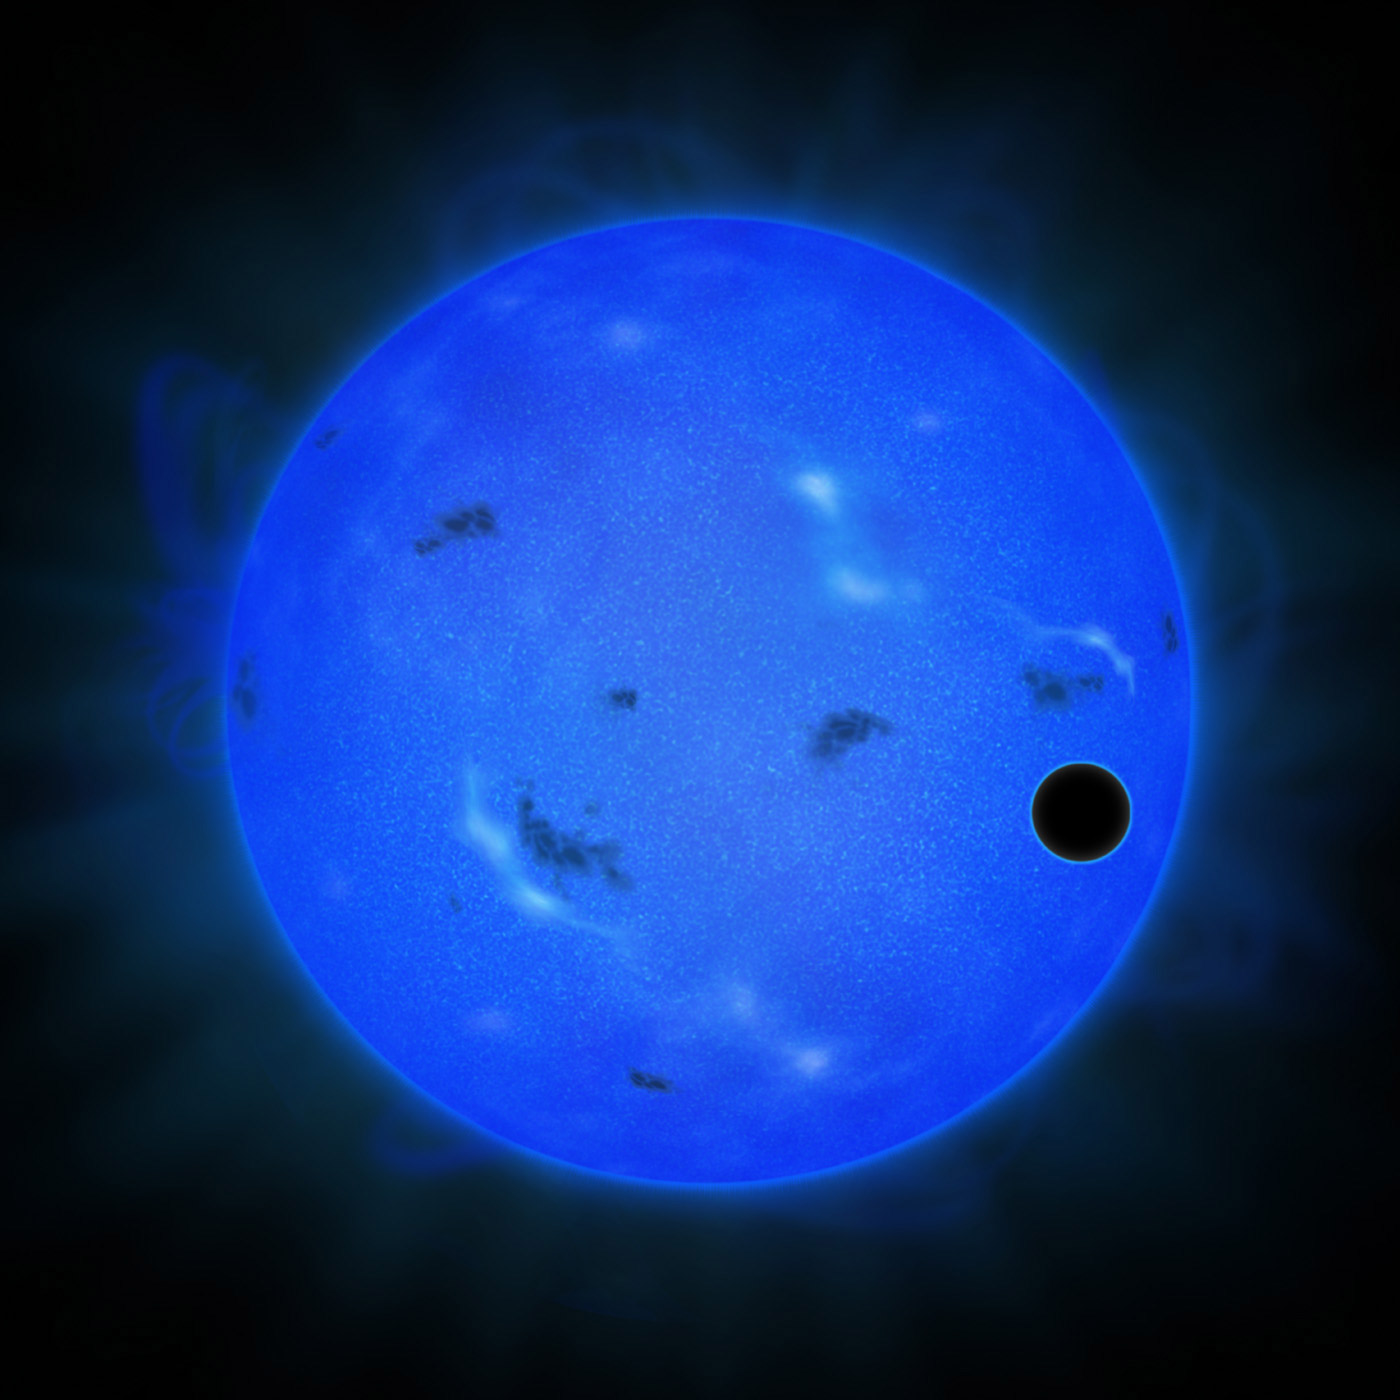 Vue d'artiste de l'étoile Gliese 1214 observée à l'aide d'un filtre pour la lumière bleue. Sur la droite, le cercle noir révèle la présence d'une superTerre effectuant un transit planétaire. C'est Gliese 1214 b. Les dernières mesures de la composition de l'atmosphère de cette exoplanète avec les instruments du téléscope Subaru sont de nouveau favorables à l'hypothèse qu'elle est riche en vapeur d'eau et pas en hydrogène. © NAOJ